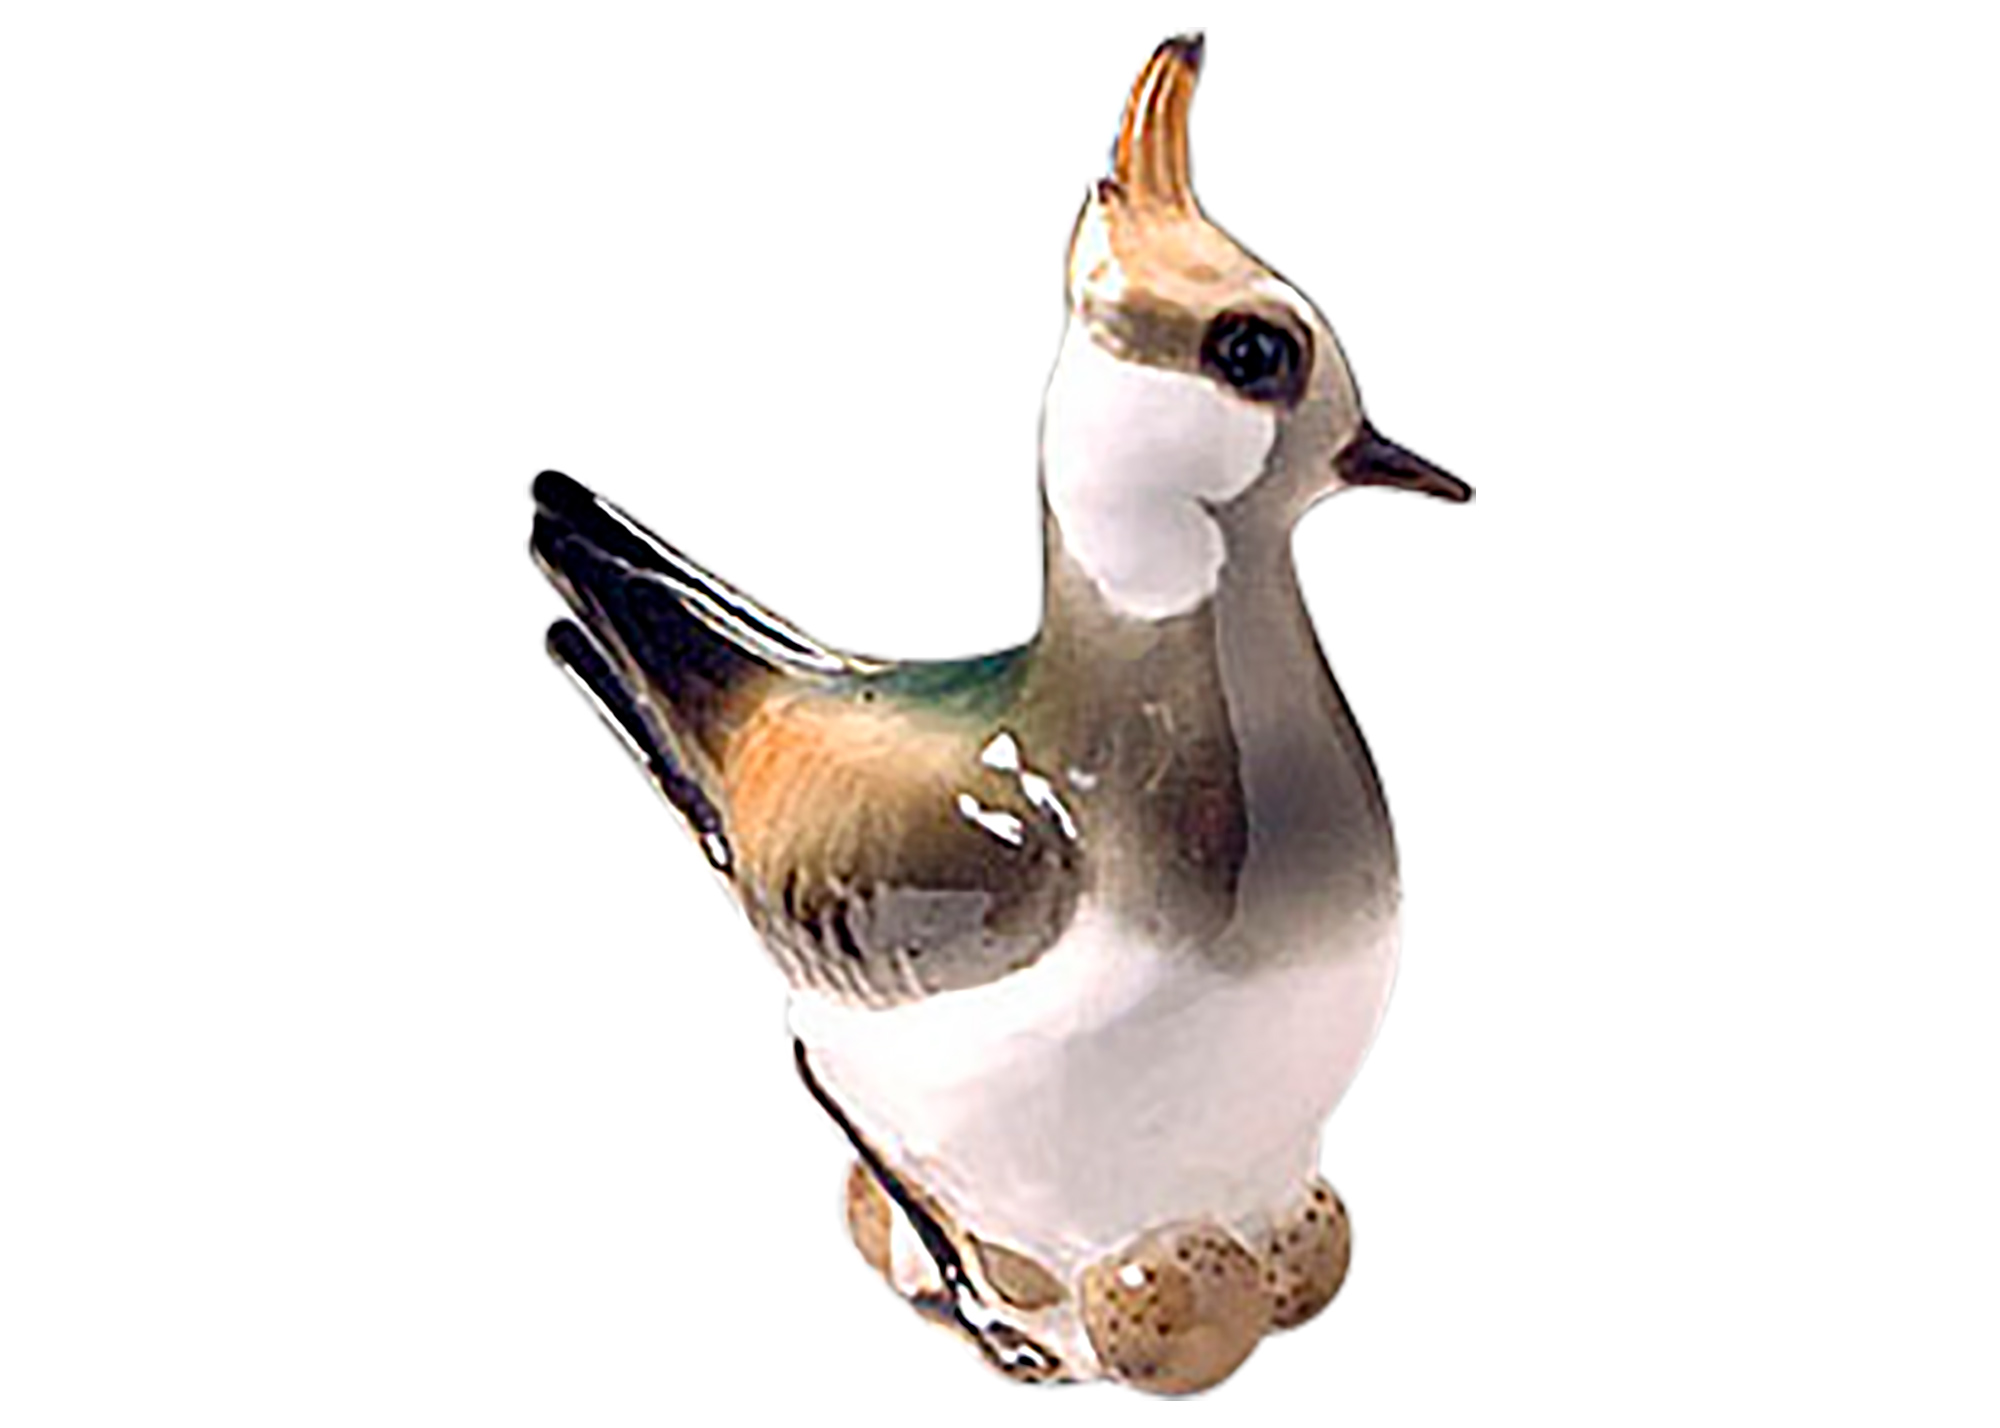 Buy Lapwing Bird Figurine at GoldenCockerel.com